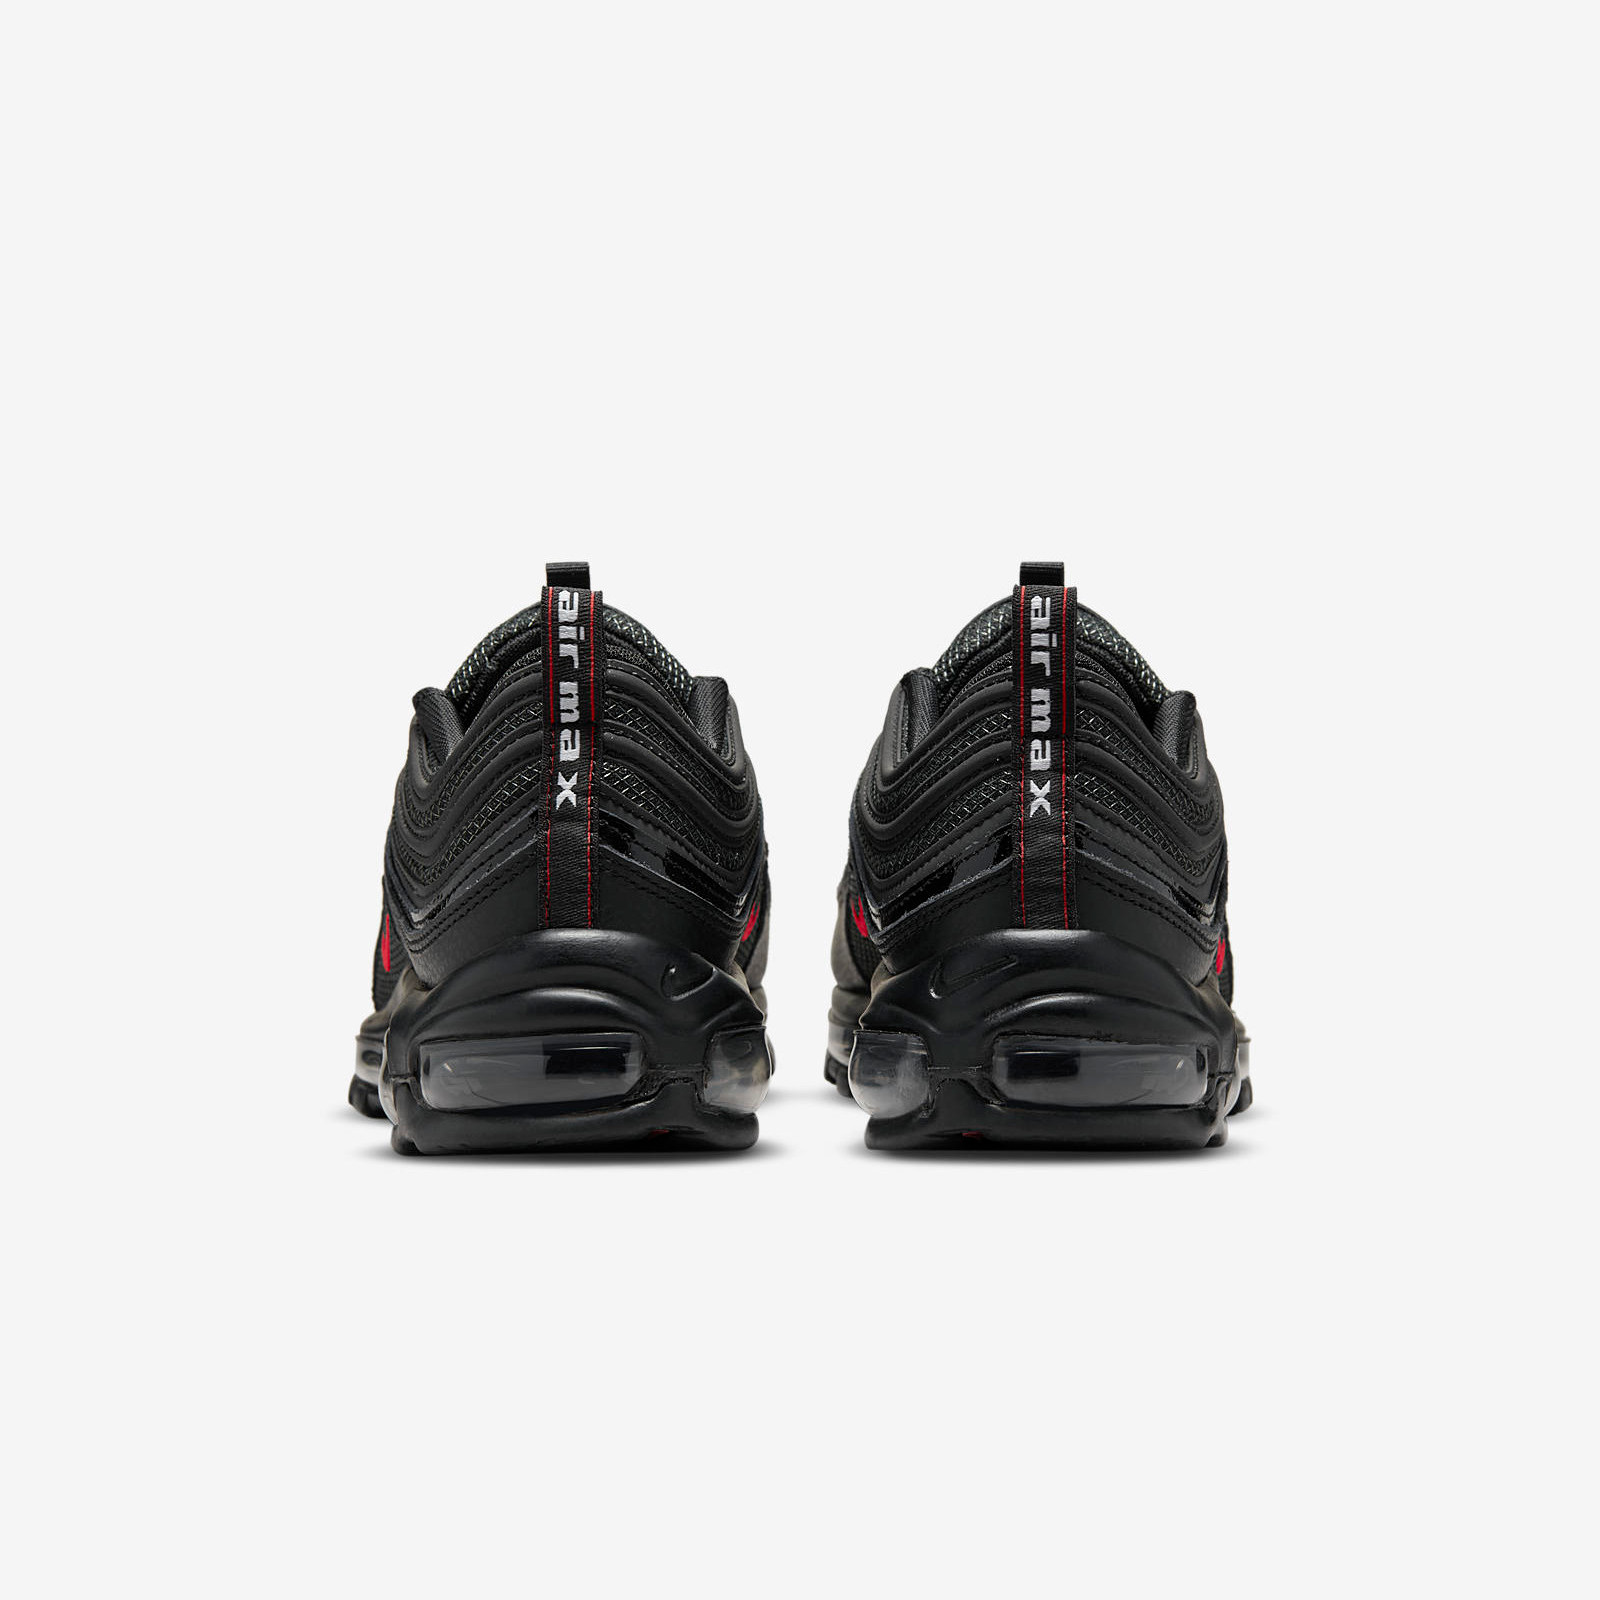 Nike Air Max 97
Black / Red